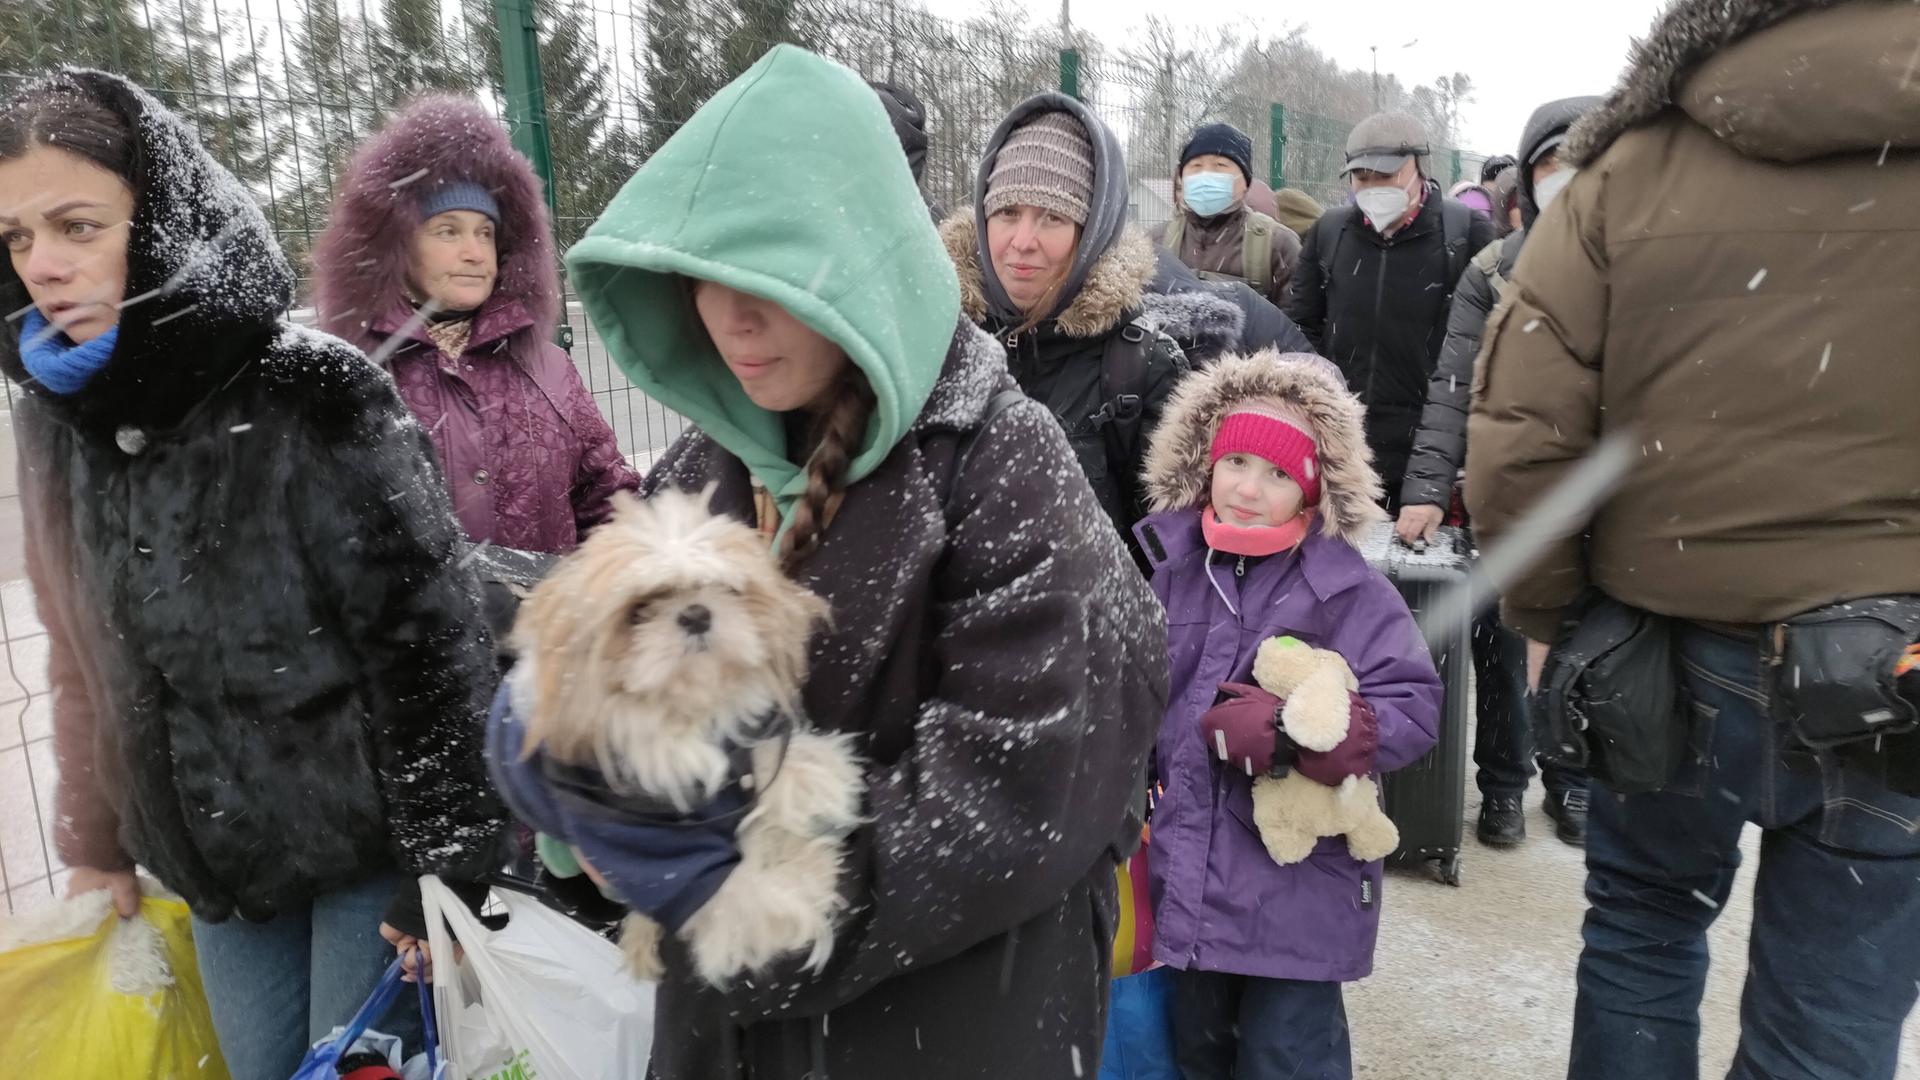 Ukrainische Flüchtlinge überqueren die Grenze zu Rumänien auf der Flucht vor dem Krieg (7.3.2022). Menschen stehen in einer Schlange vor einem Zaun